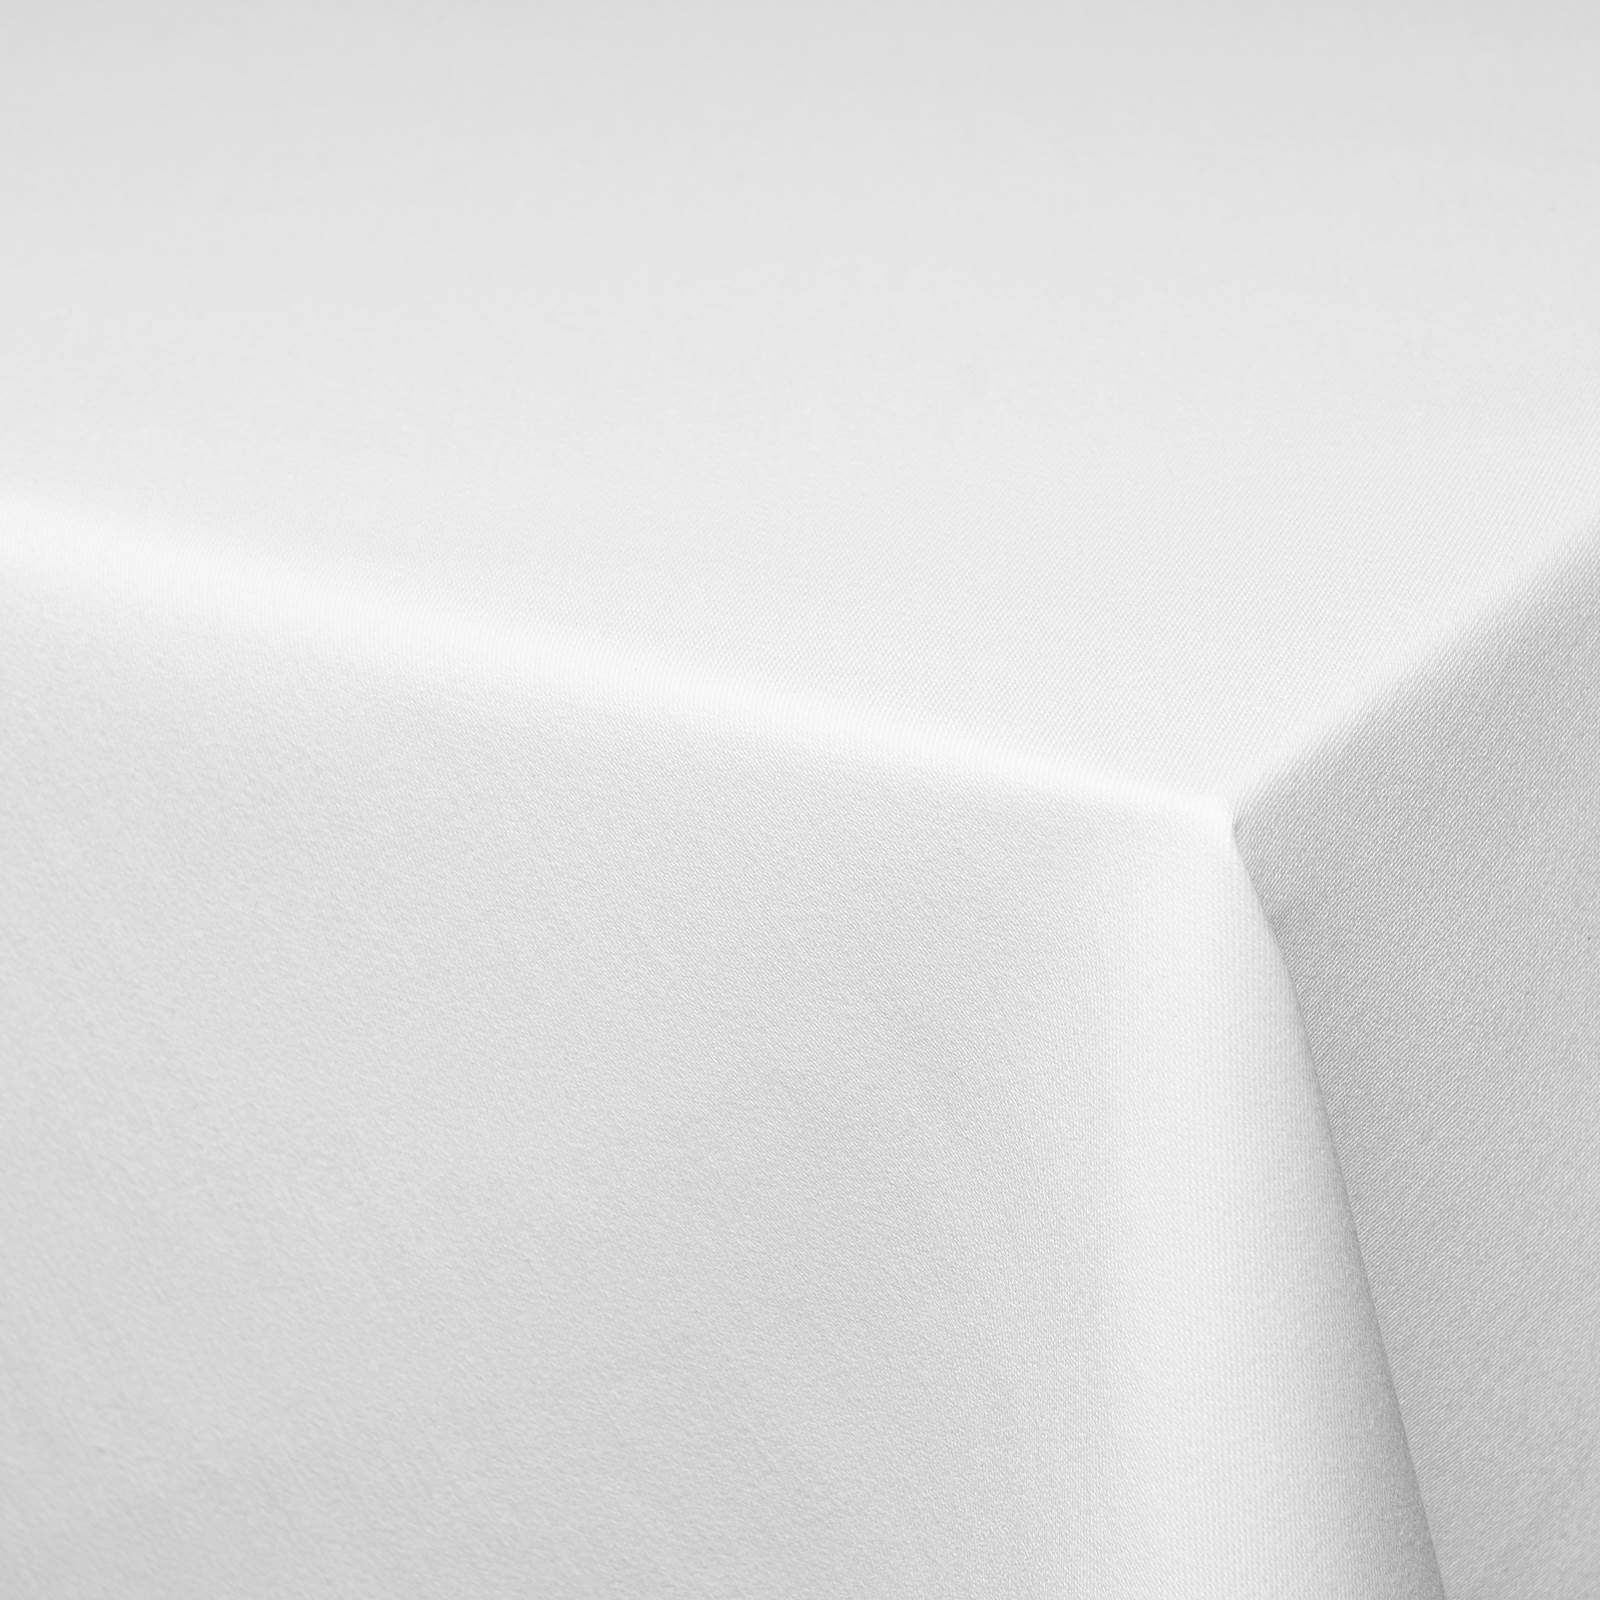 Vera - tela de damasco de dos capas - coloración Indanthren® (blanco)